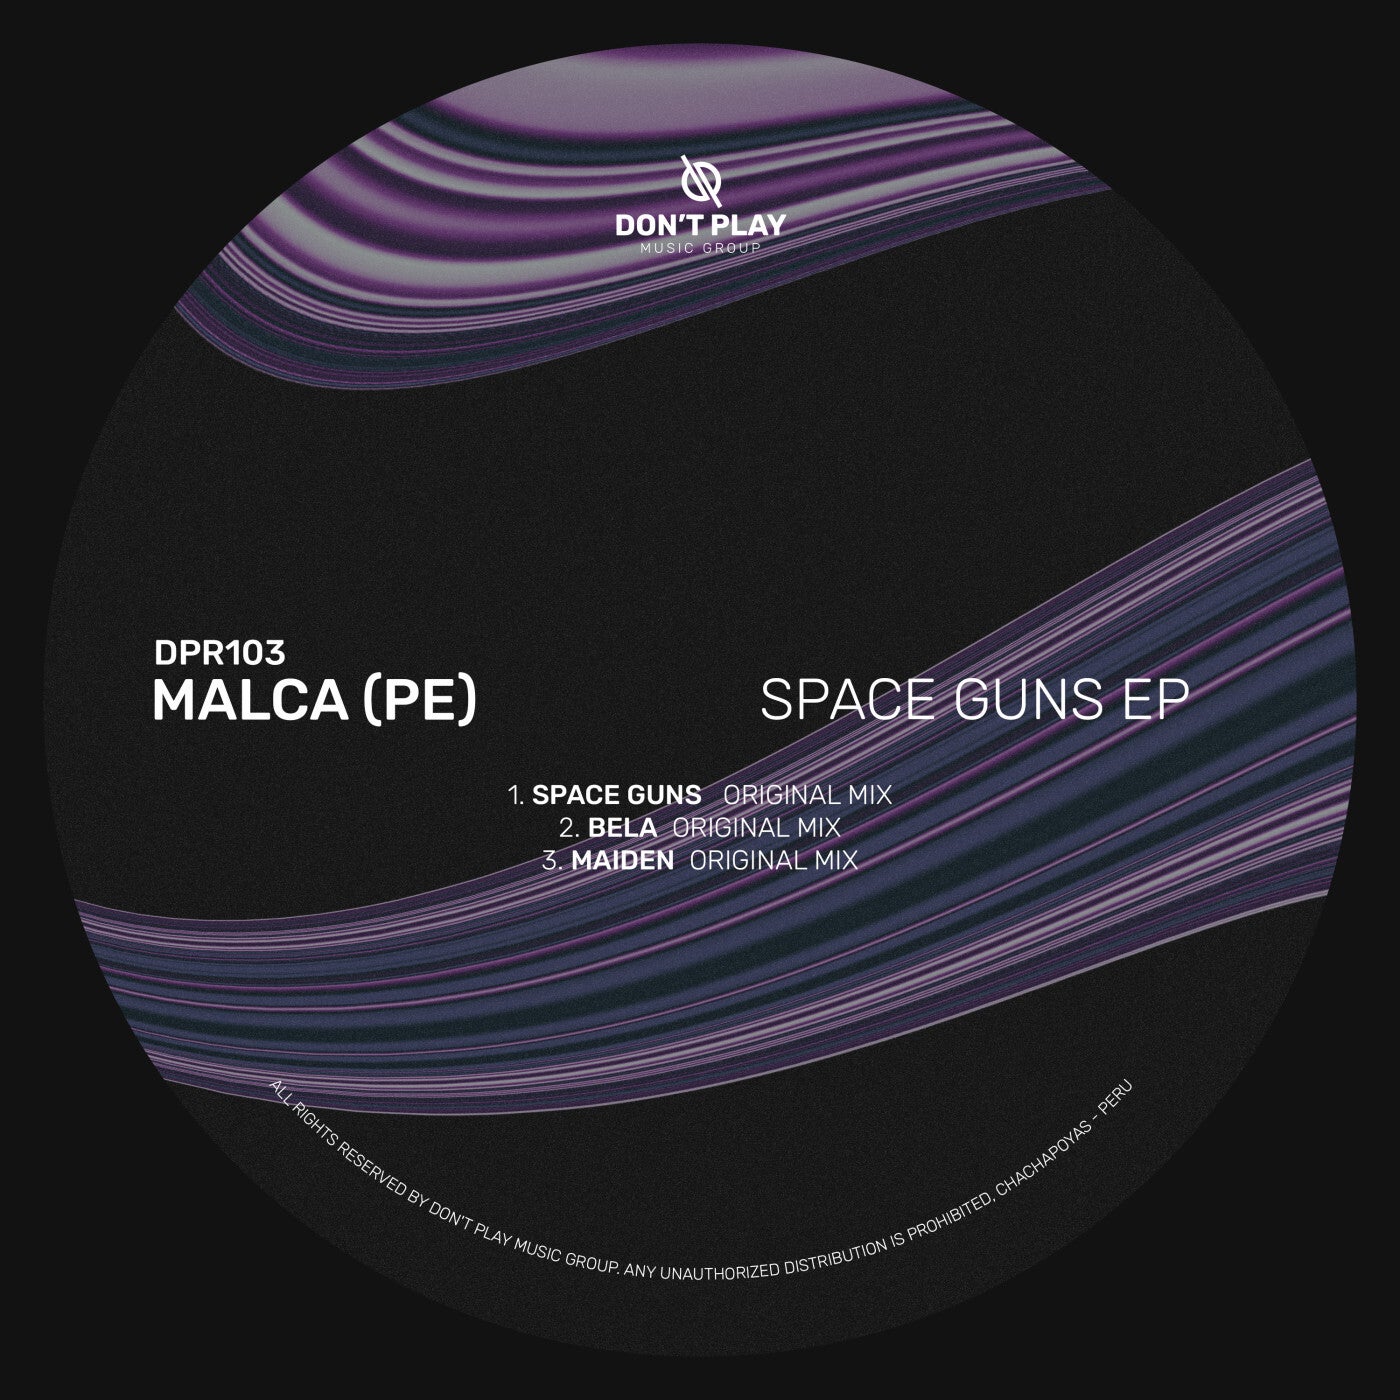 Space Guns EP